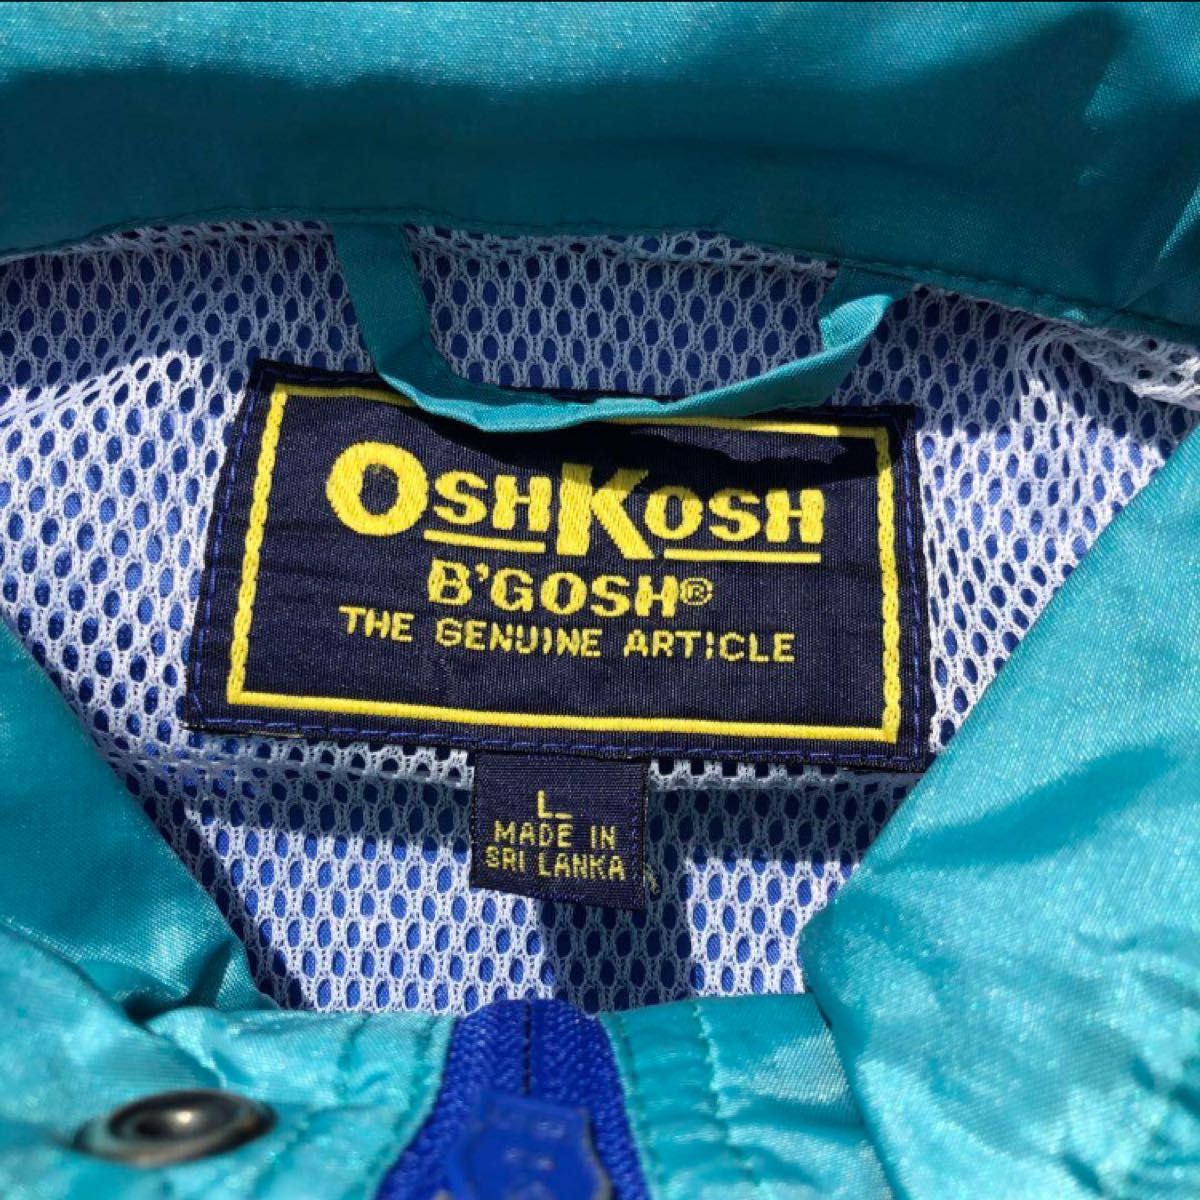 OLD OSH KOSH オールド オシュコシュ ナイロンジャケット Lサイズ ブルー エメラルドグリーン ウインドブレーカー